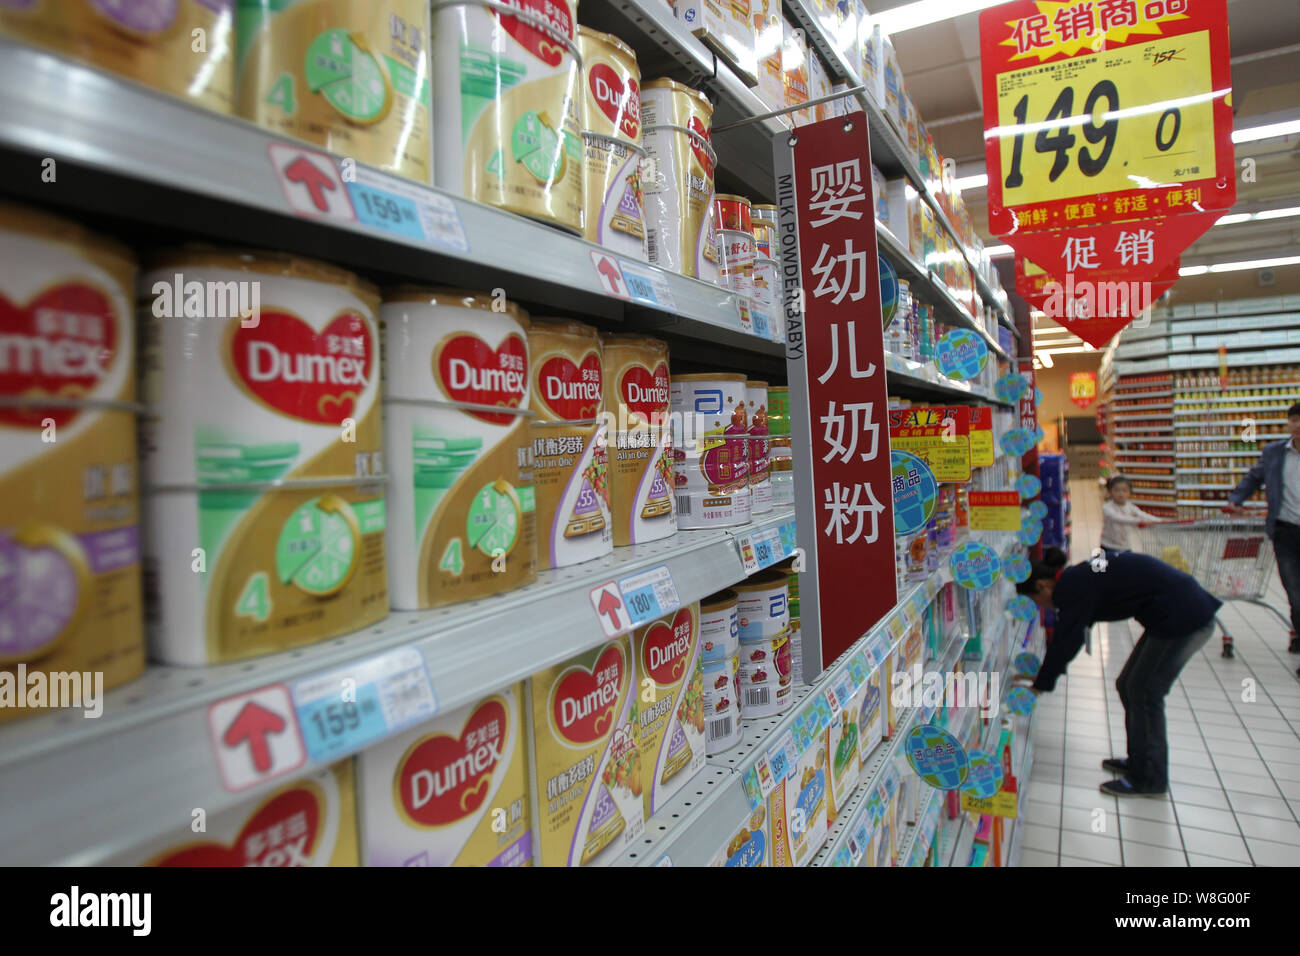 --FILE--boîtes de lait pour bébé Dumex de Danone sont en vente dans un supermarché dans la ville de Nantong, province du Jiangsu en Chine de l'Est, 2 novembre 2013. Stock Banque D'Images